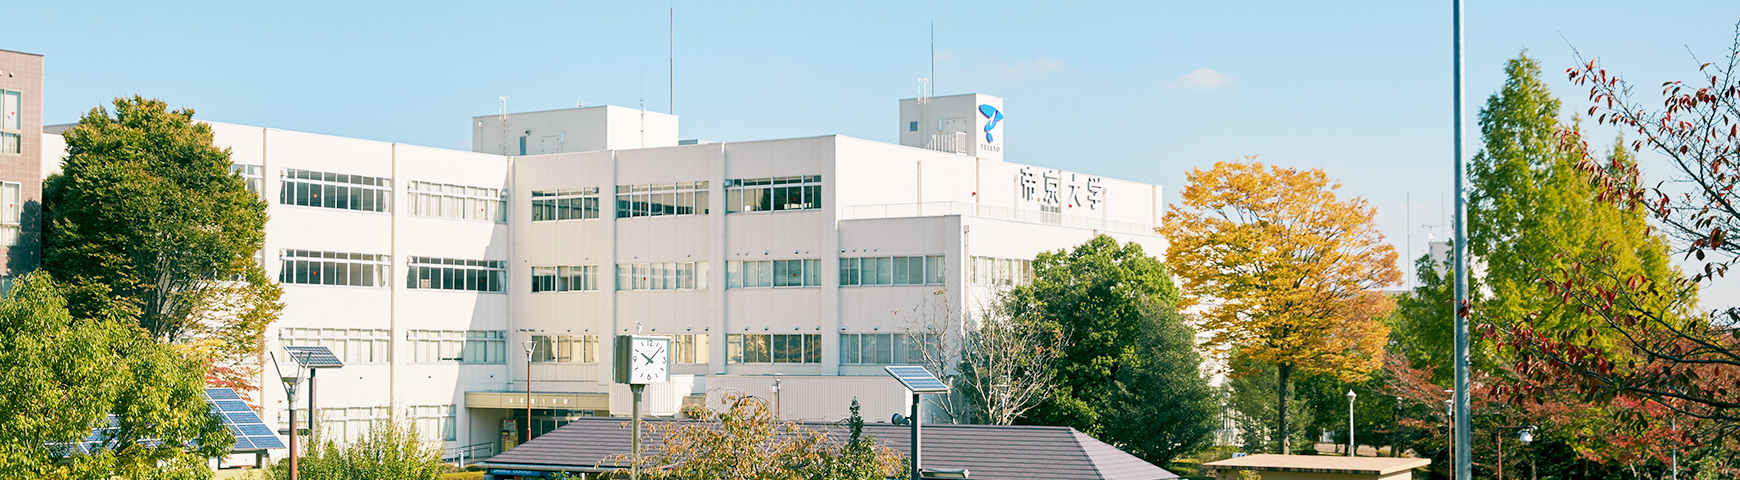 Utsunomiya Open Campus